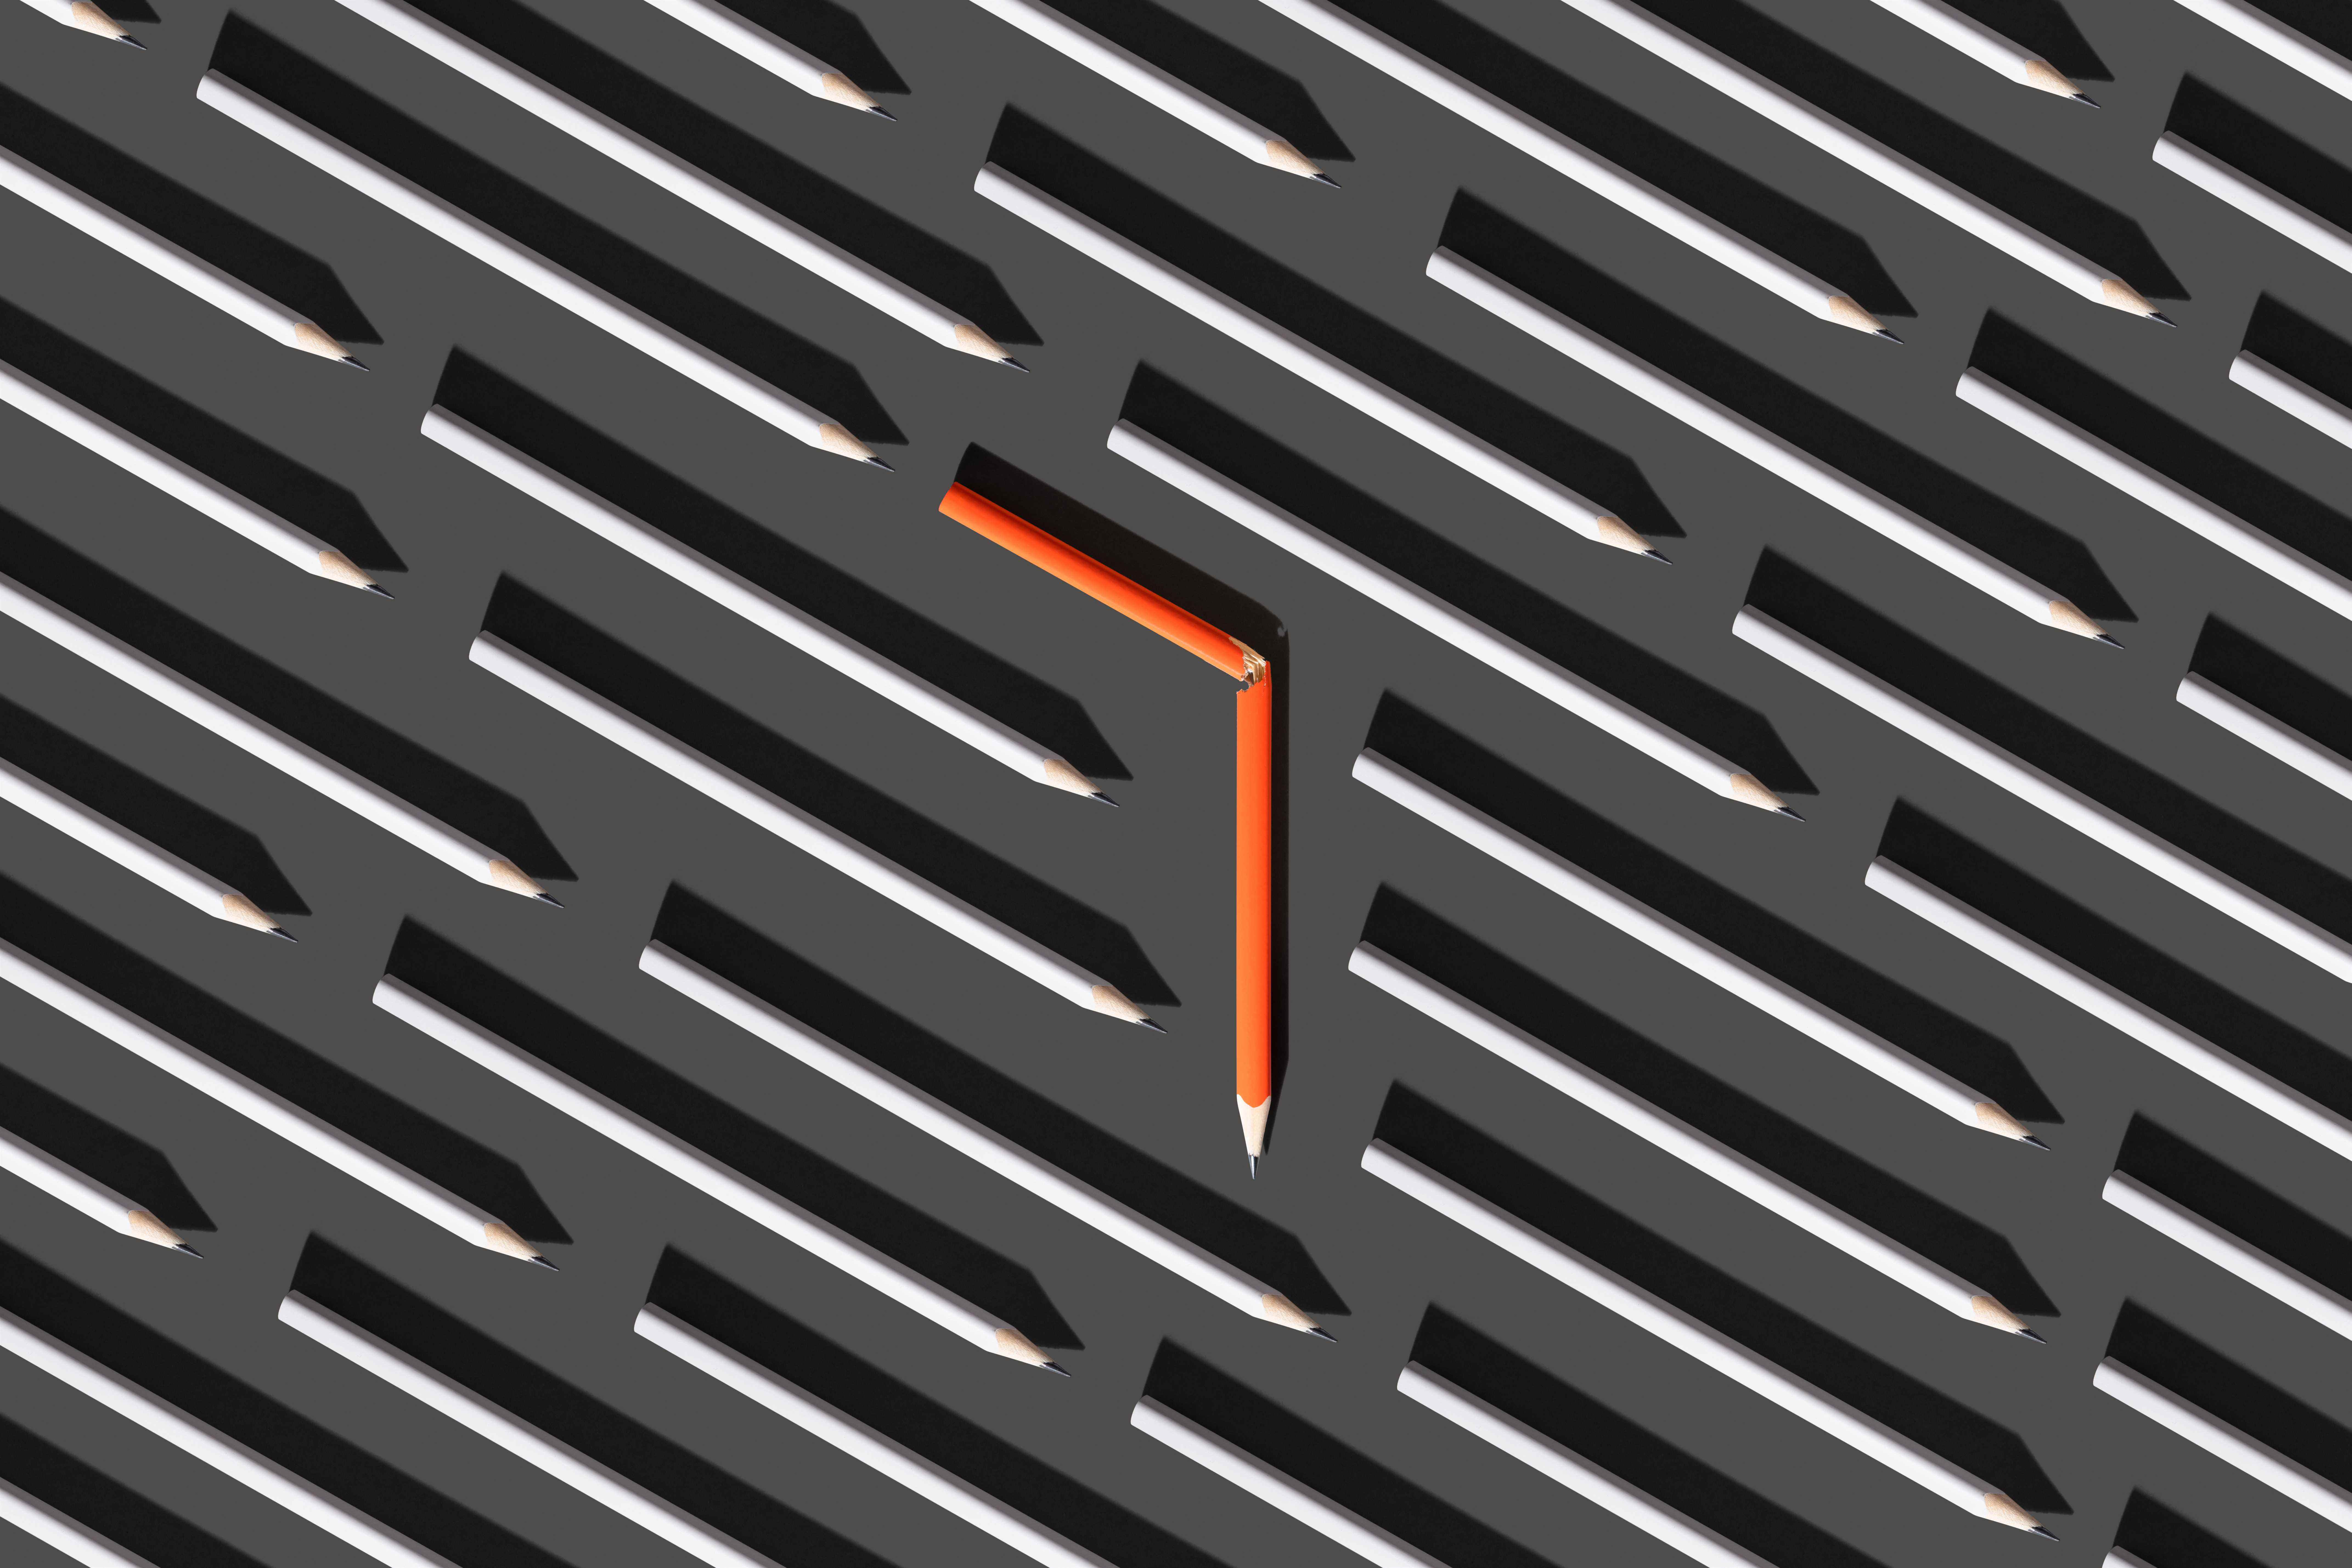 Image d'un crayon cassé orange au milieu de crayons gris droits pour représenter le pivotement.